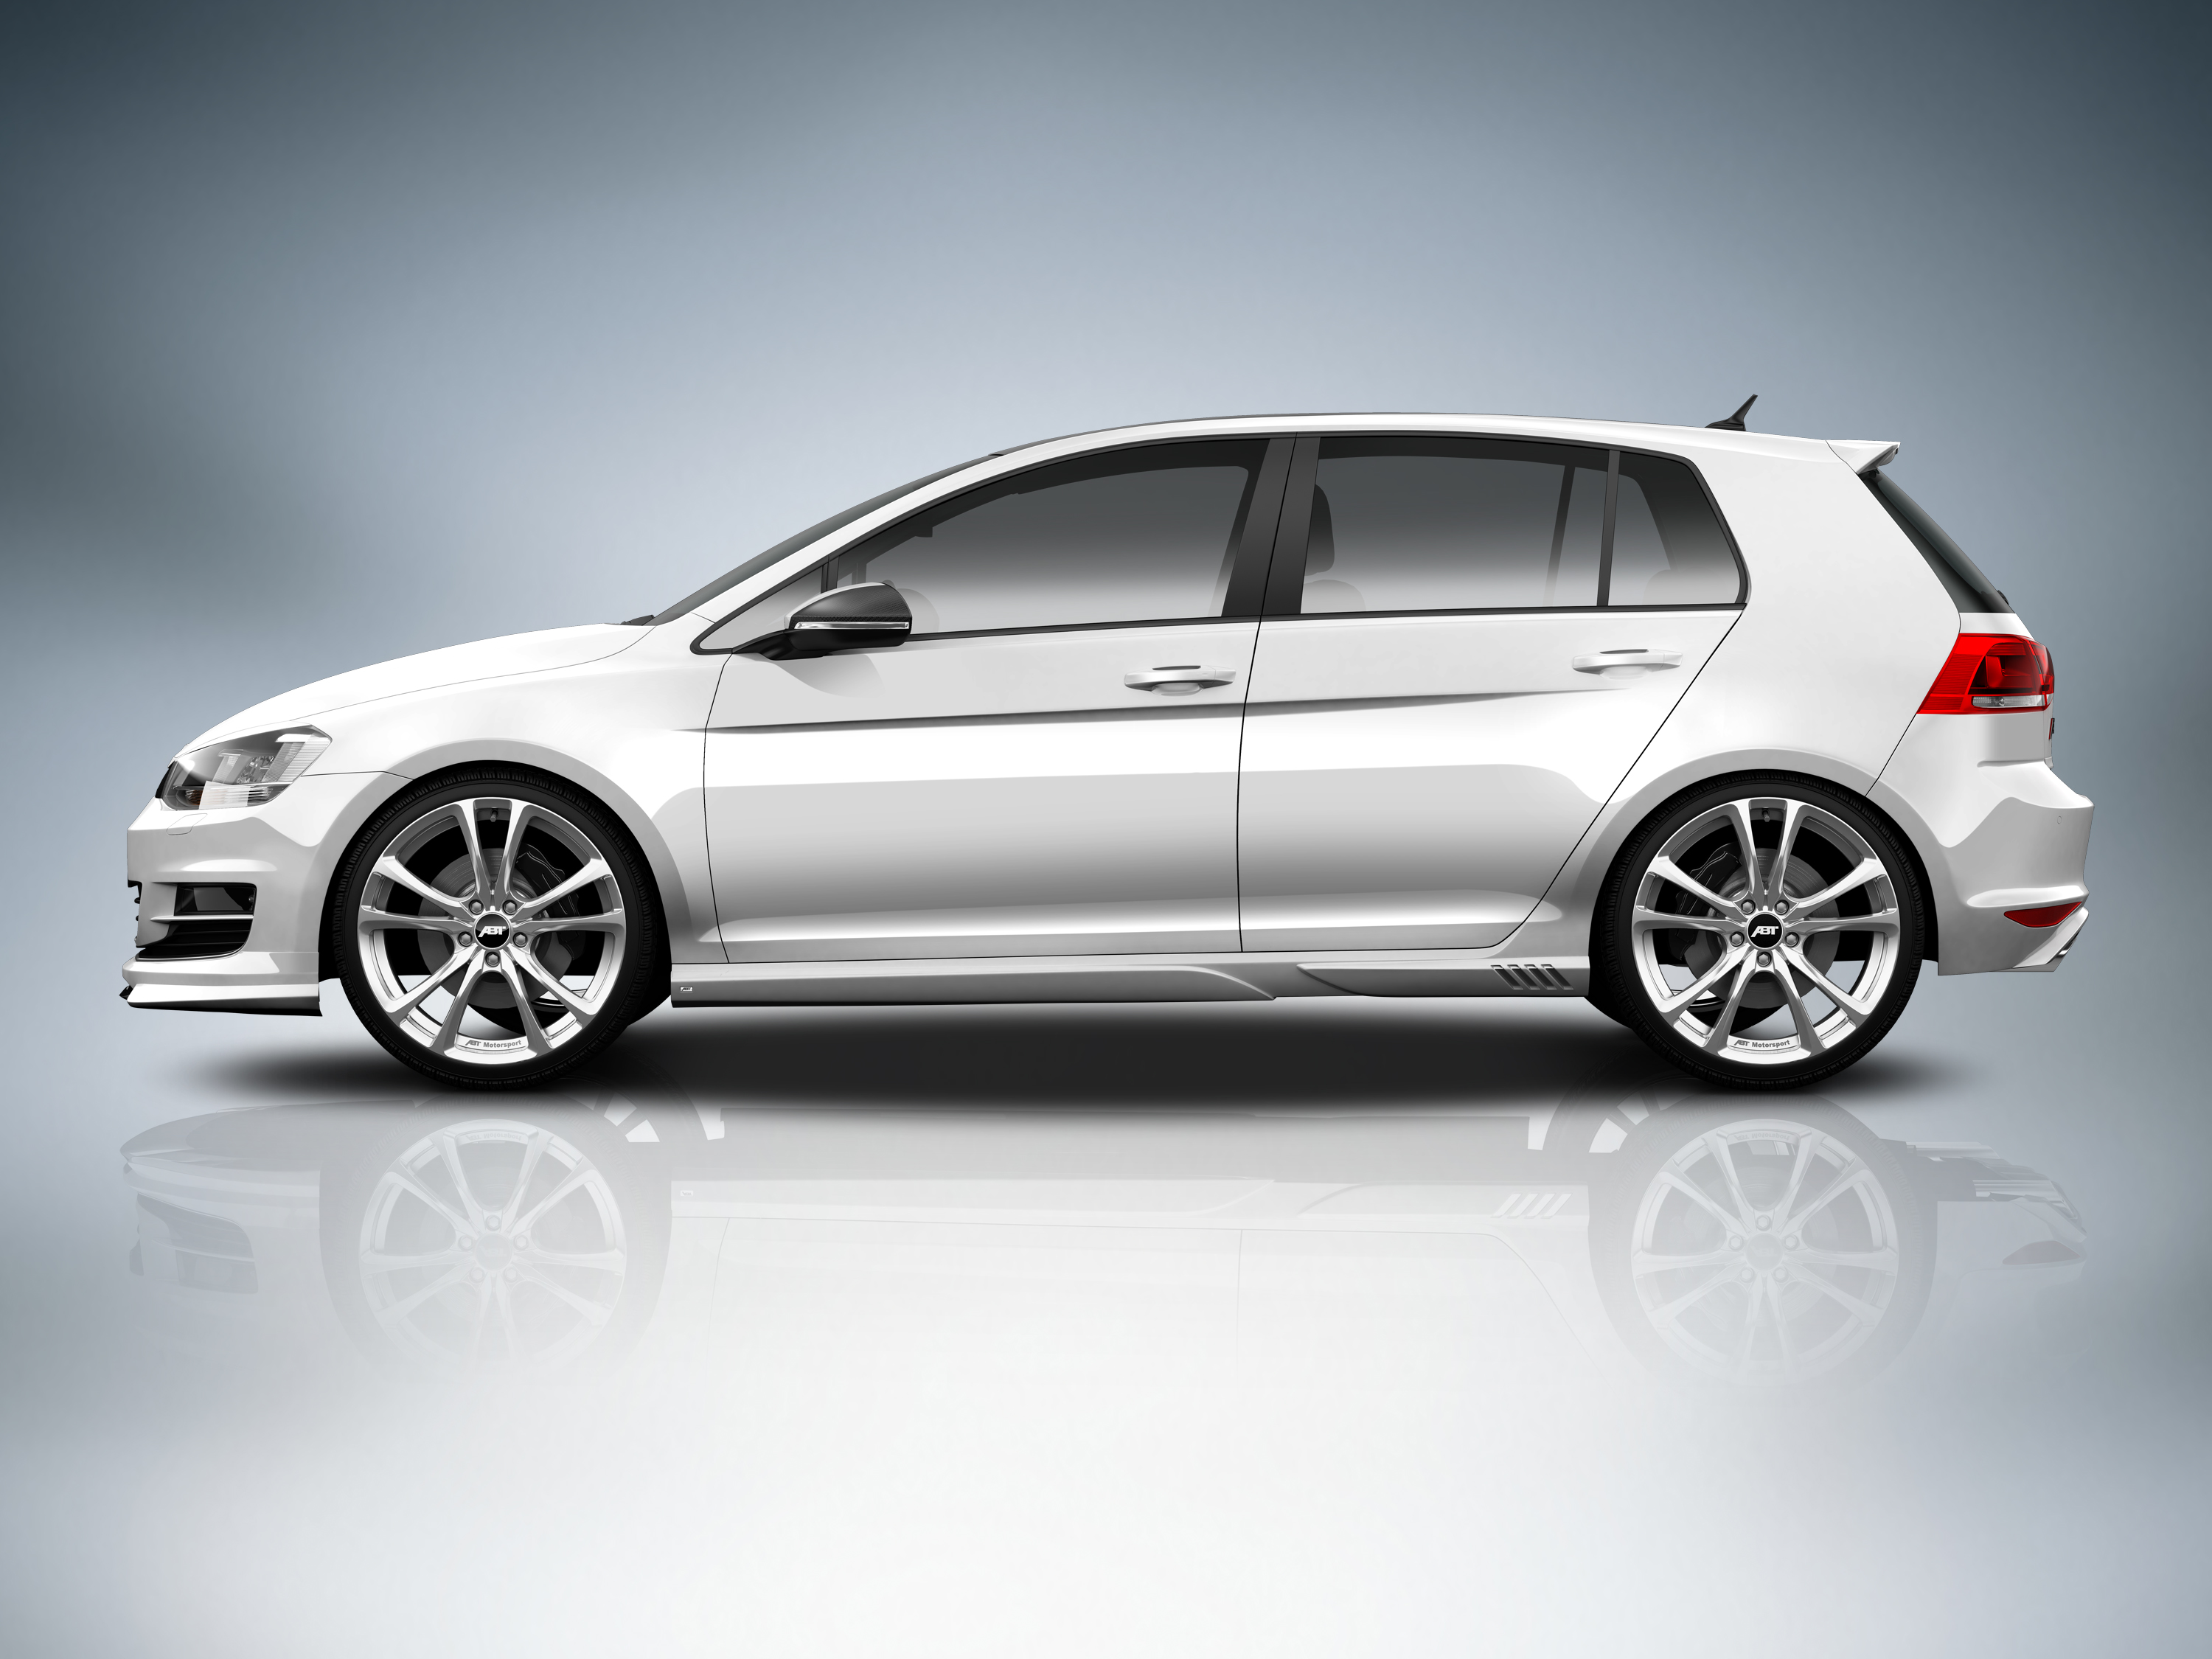 GENF 2013: Der glorreiche Sieben – ABT Sportsline und der neue Golf - Audi  Tuning, VW Tuning, Chiptuning von ABT Sportsline.